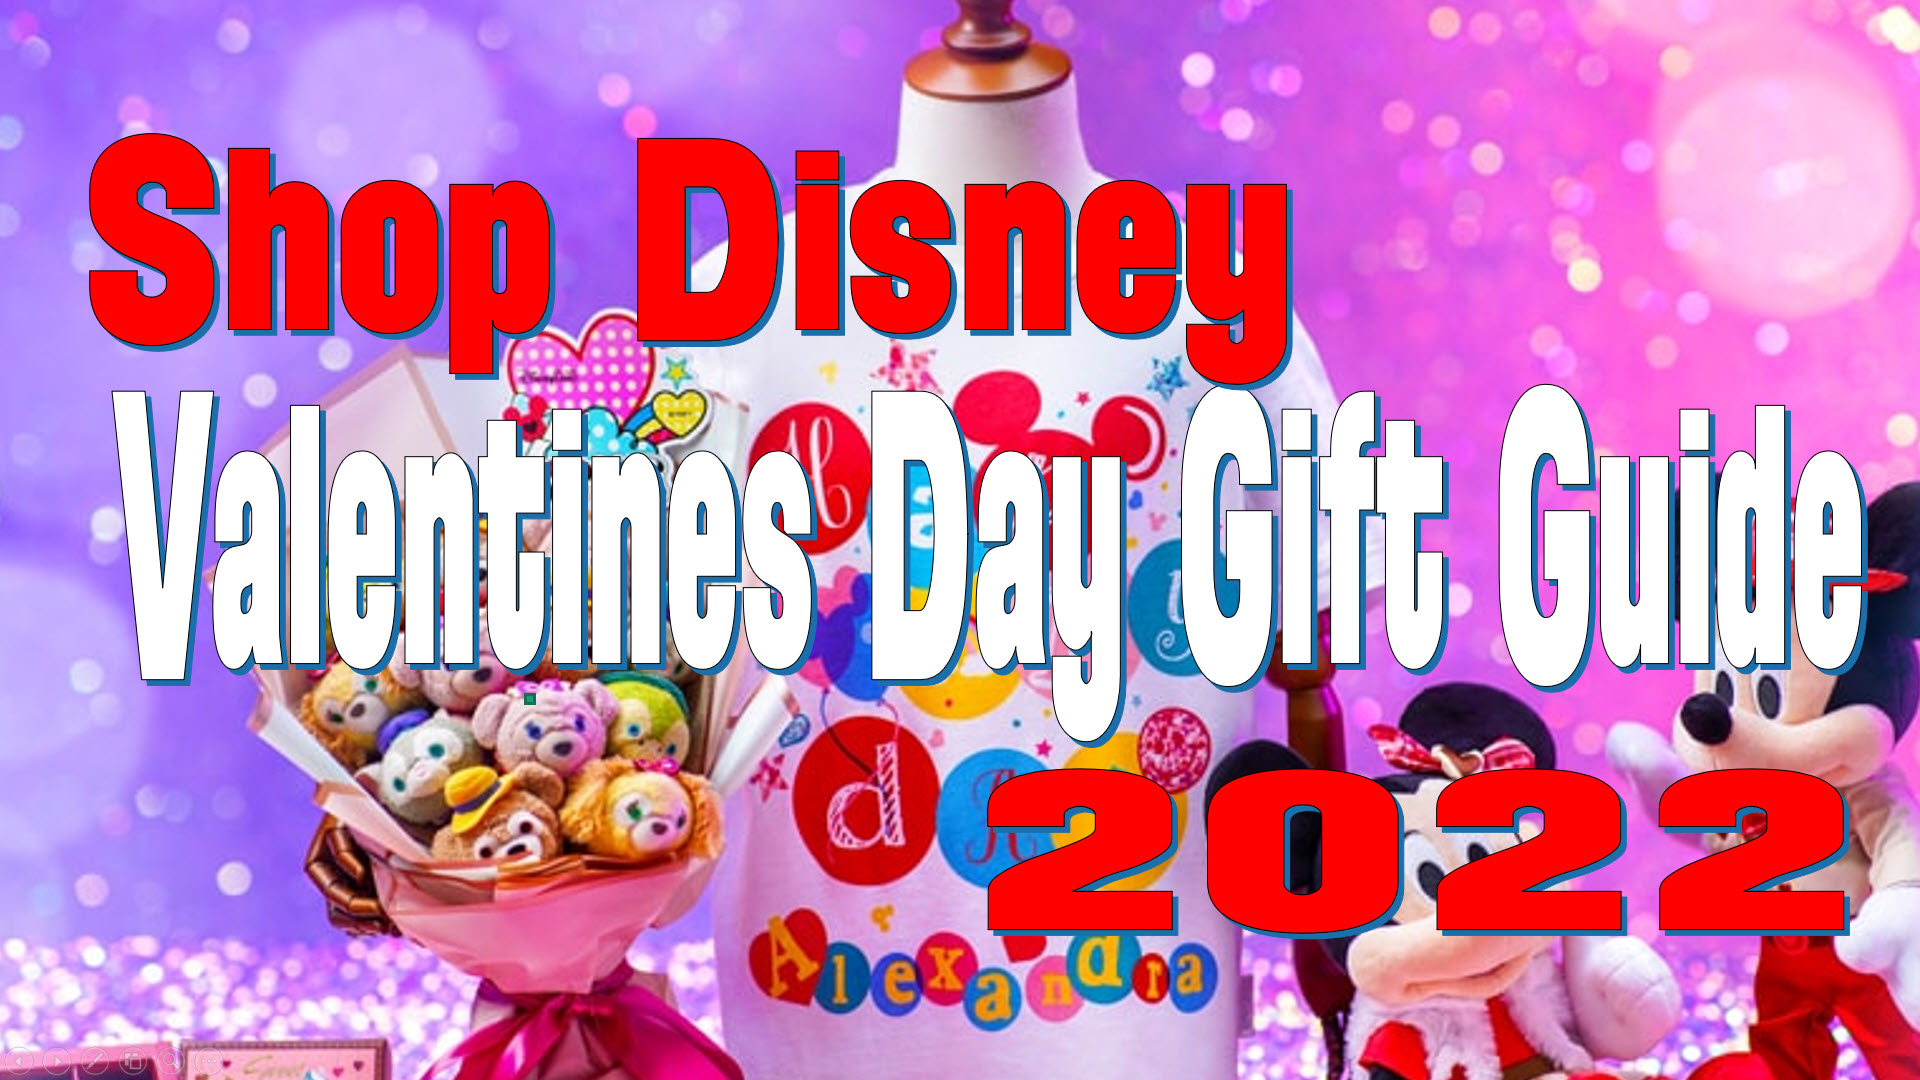 Dooney & Bourke Introduces New Disney Valentine's Pattern